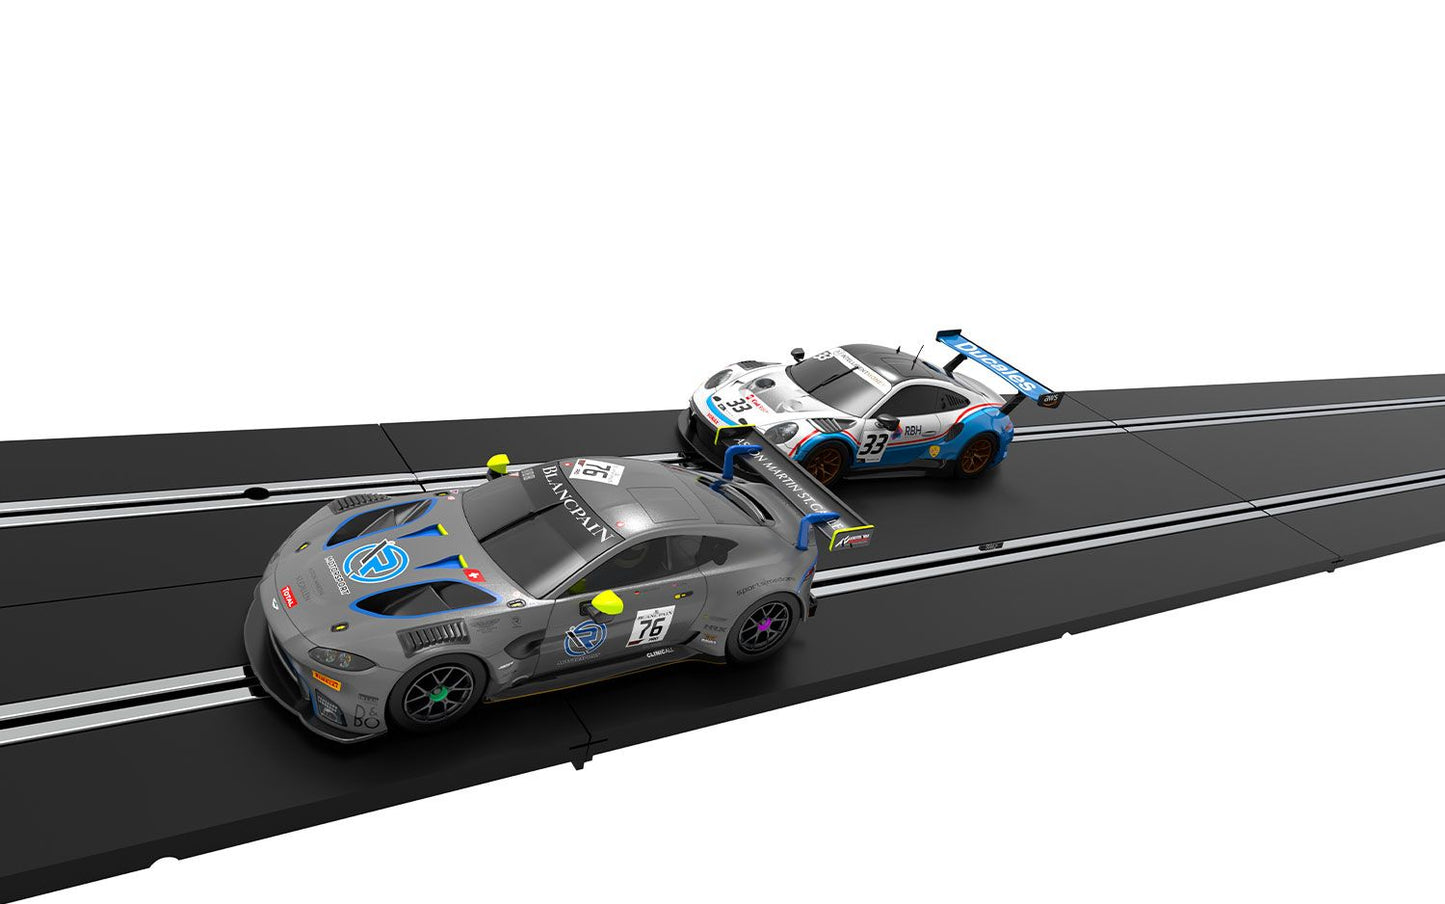 World GT - Aston Martin Vantage GT3 vs Porsche 911 GT3 R